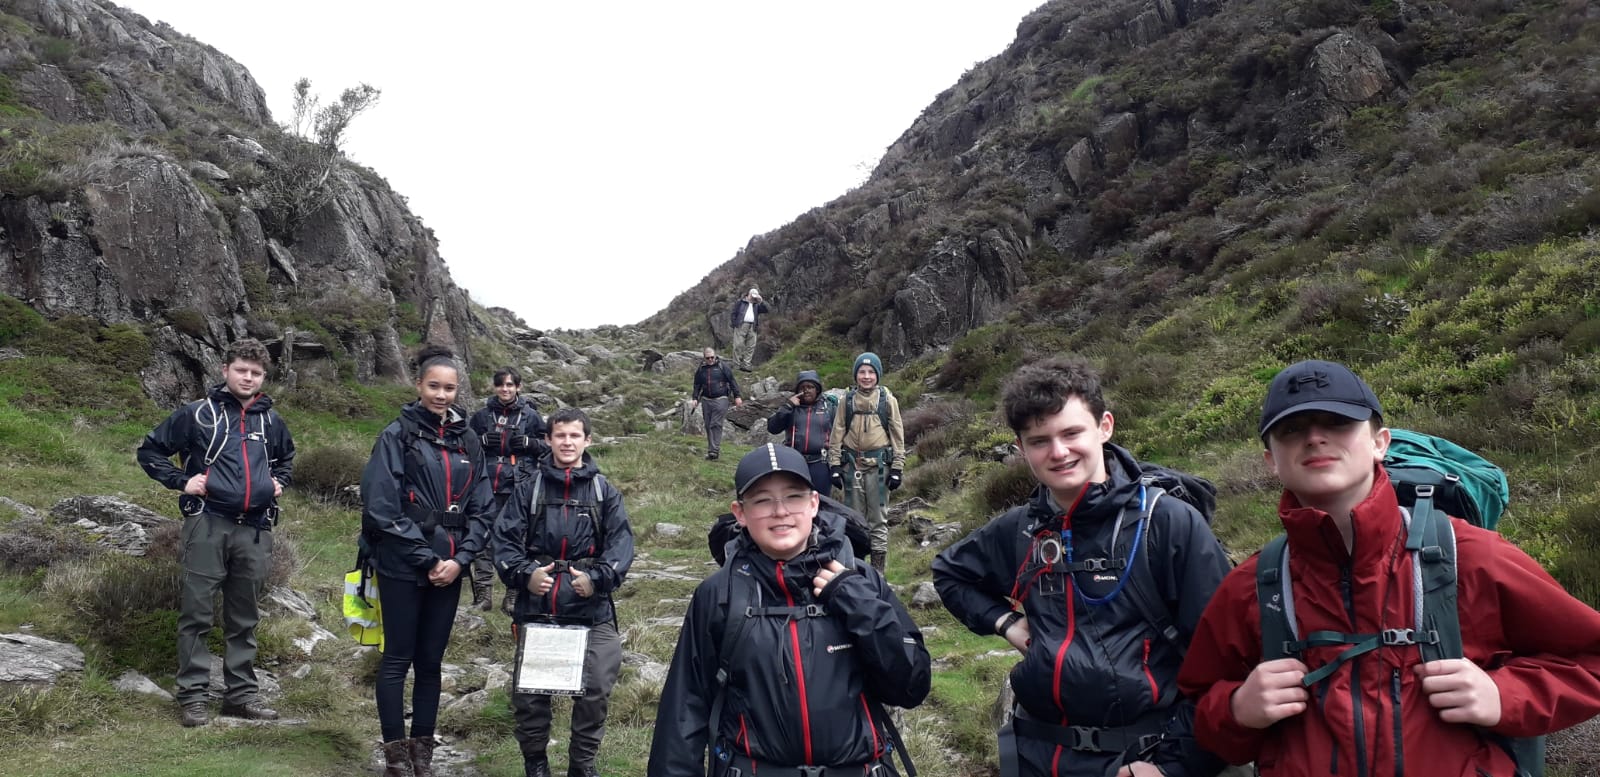 Adventure training week in Snowdonia